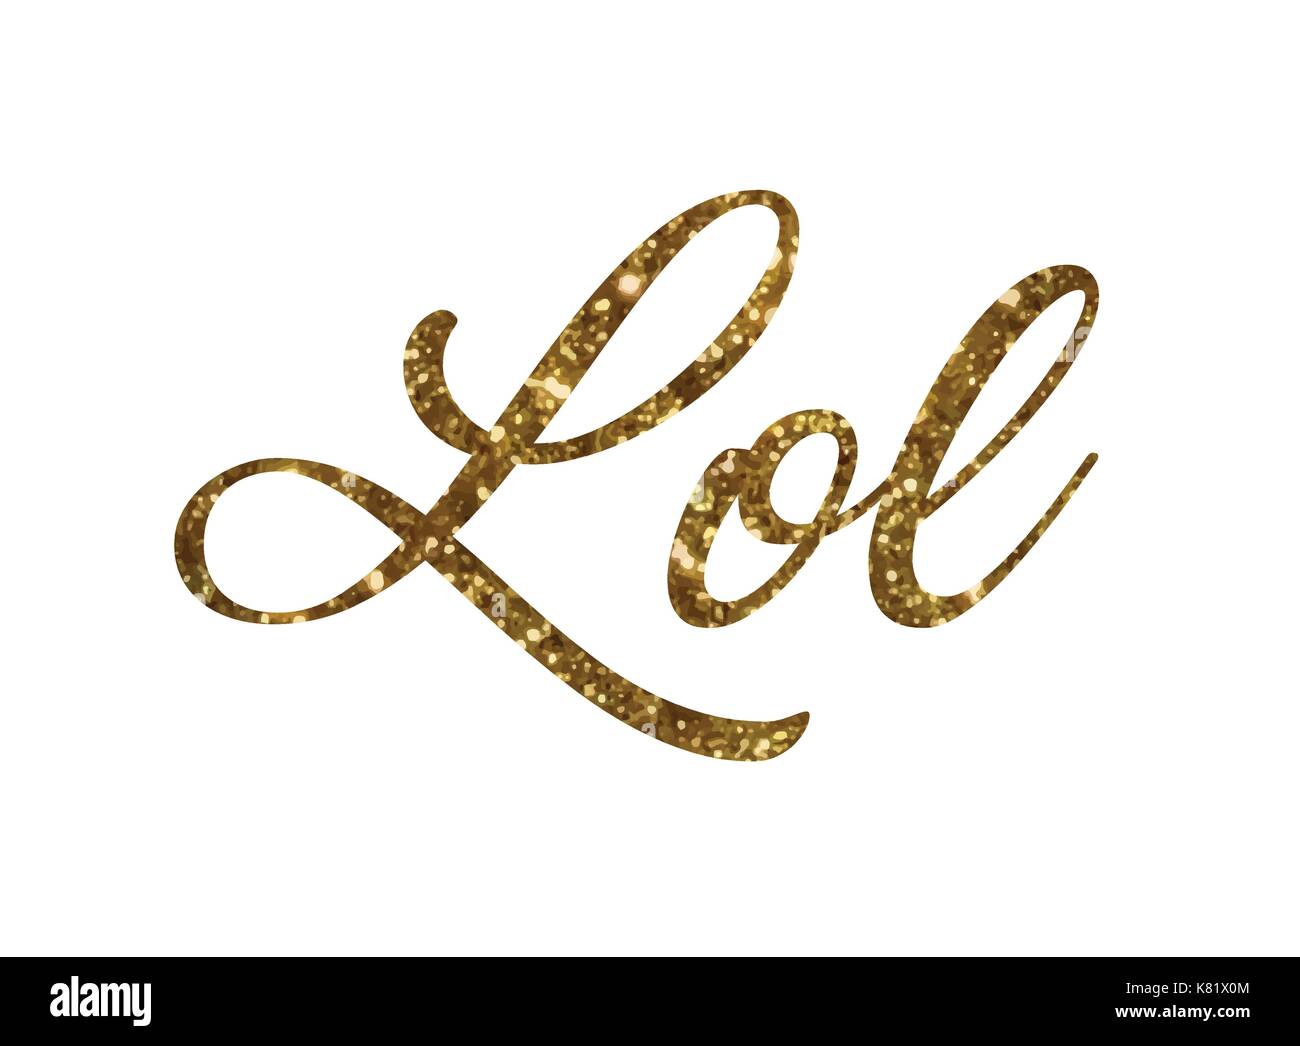 Le golden glitter de main mot isolé écrit LOL - Rire à plein volume Illustration de Vecteur